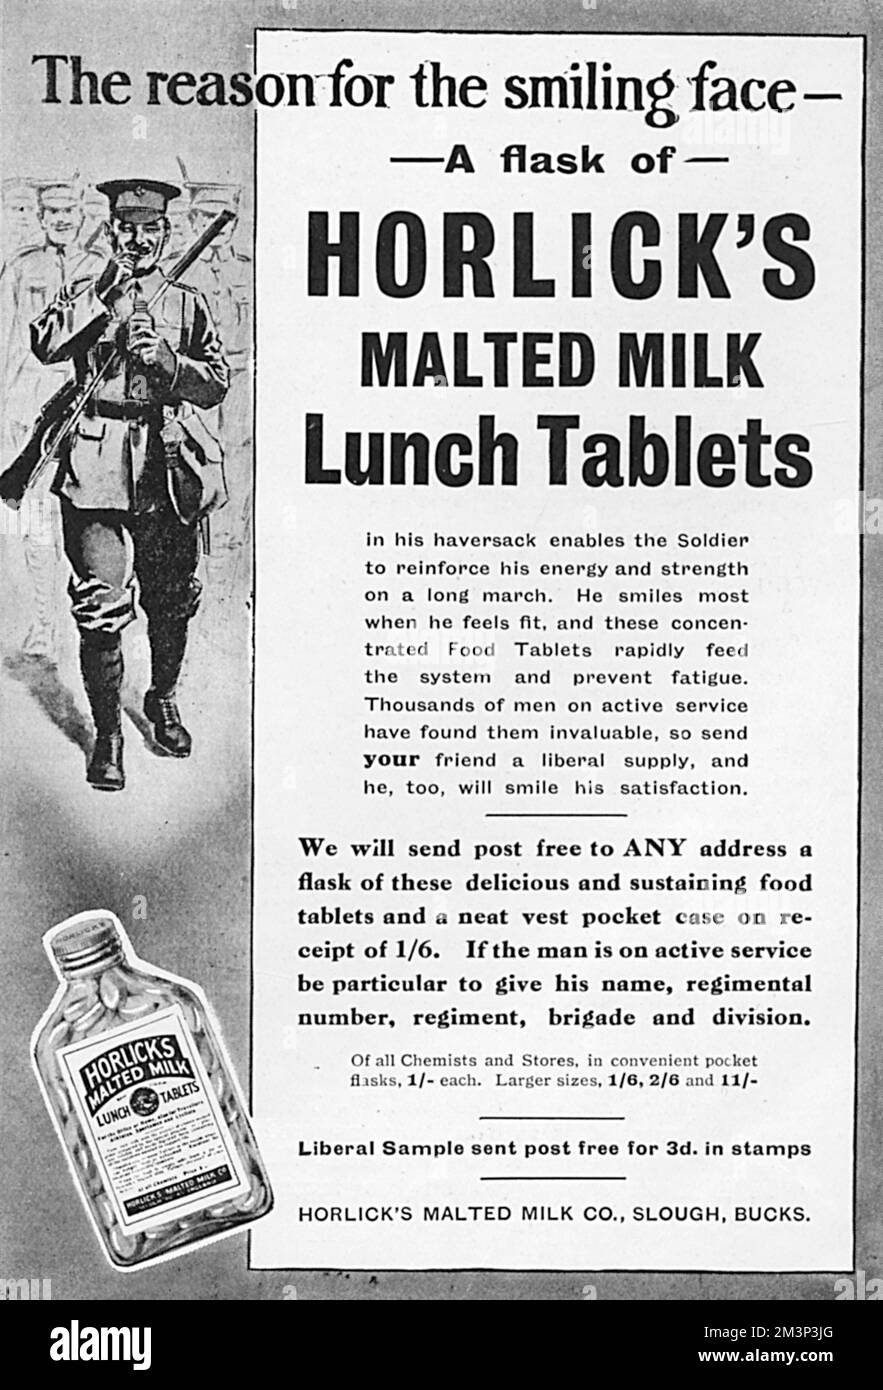 Pubblicità per Horlick's Malted Milk Lunch Tablets, solo la cosa per rafforzare l'energia e la forza di un soldato durante una lunga marcia. "Migliaia di uomini in servizio attivo li hanno trovati inestimabili, quindi manda al tuo amico un'offerta liberale...". Data: 1915 Foto Stock